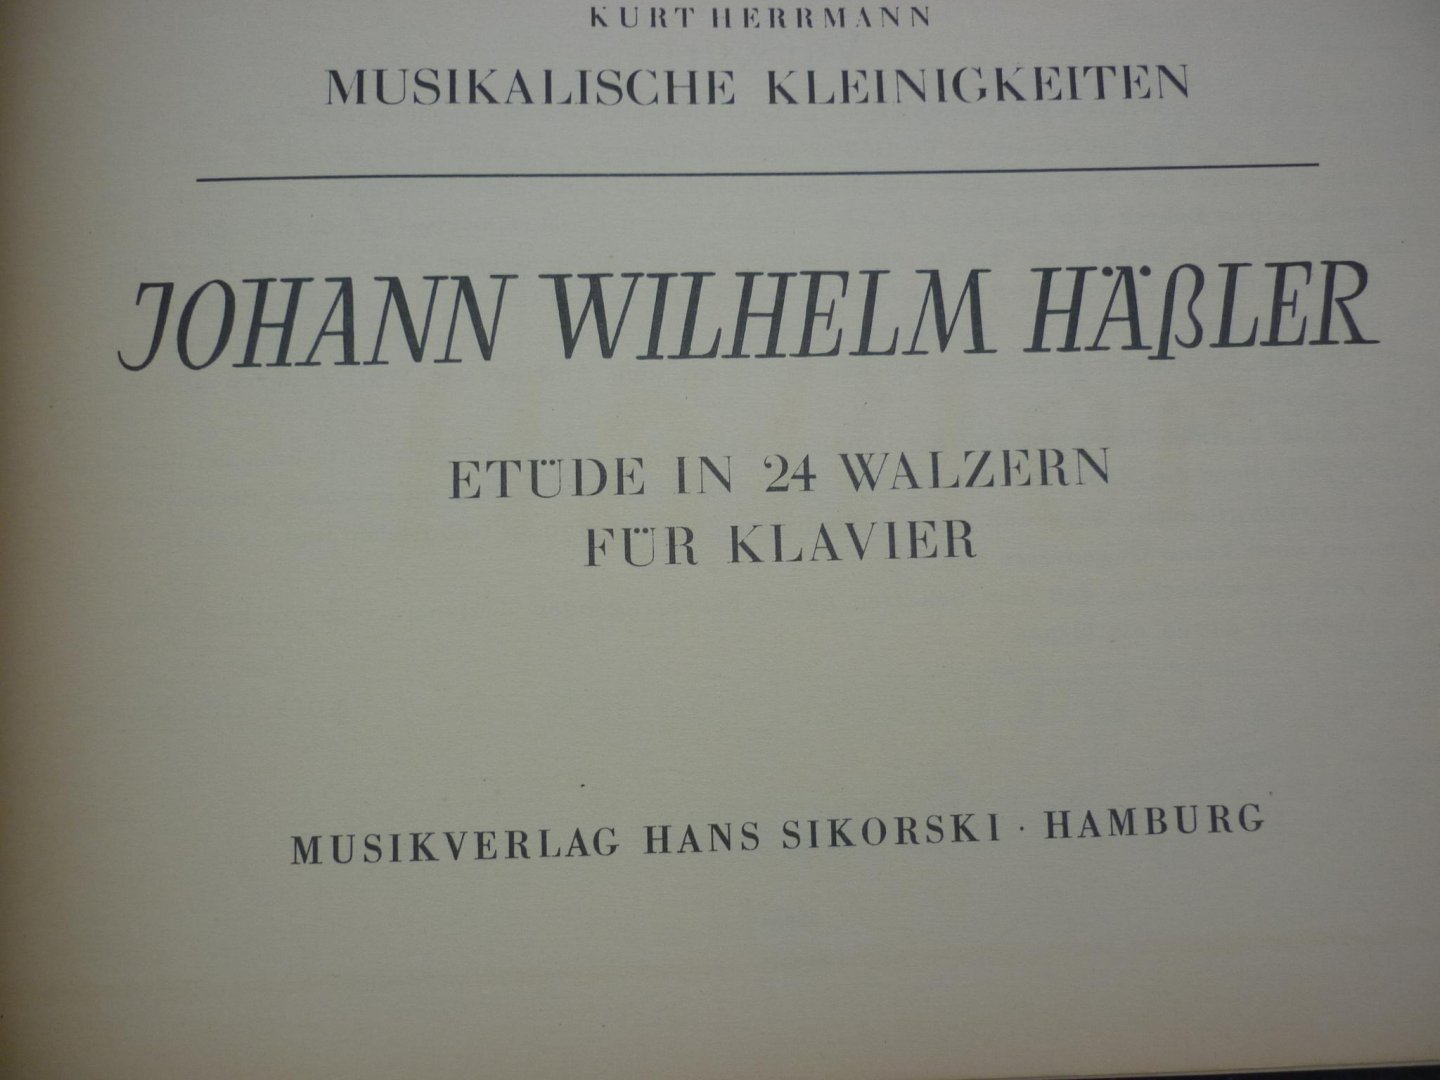 Haessler; Johann Wilhelm - 24 kleine Etüden in Walzerform; voor Piano (Kurt Herrmann - Musikalische Kleinigkeiten fur Klavier)